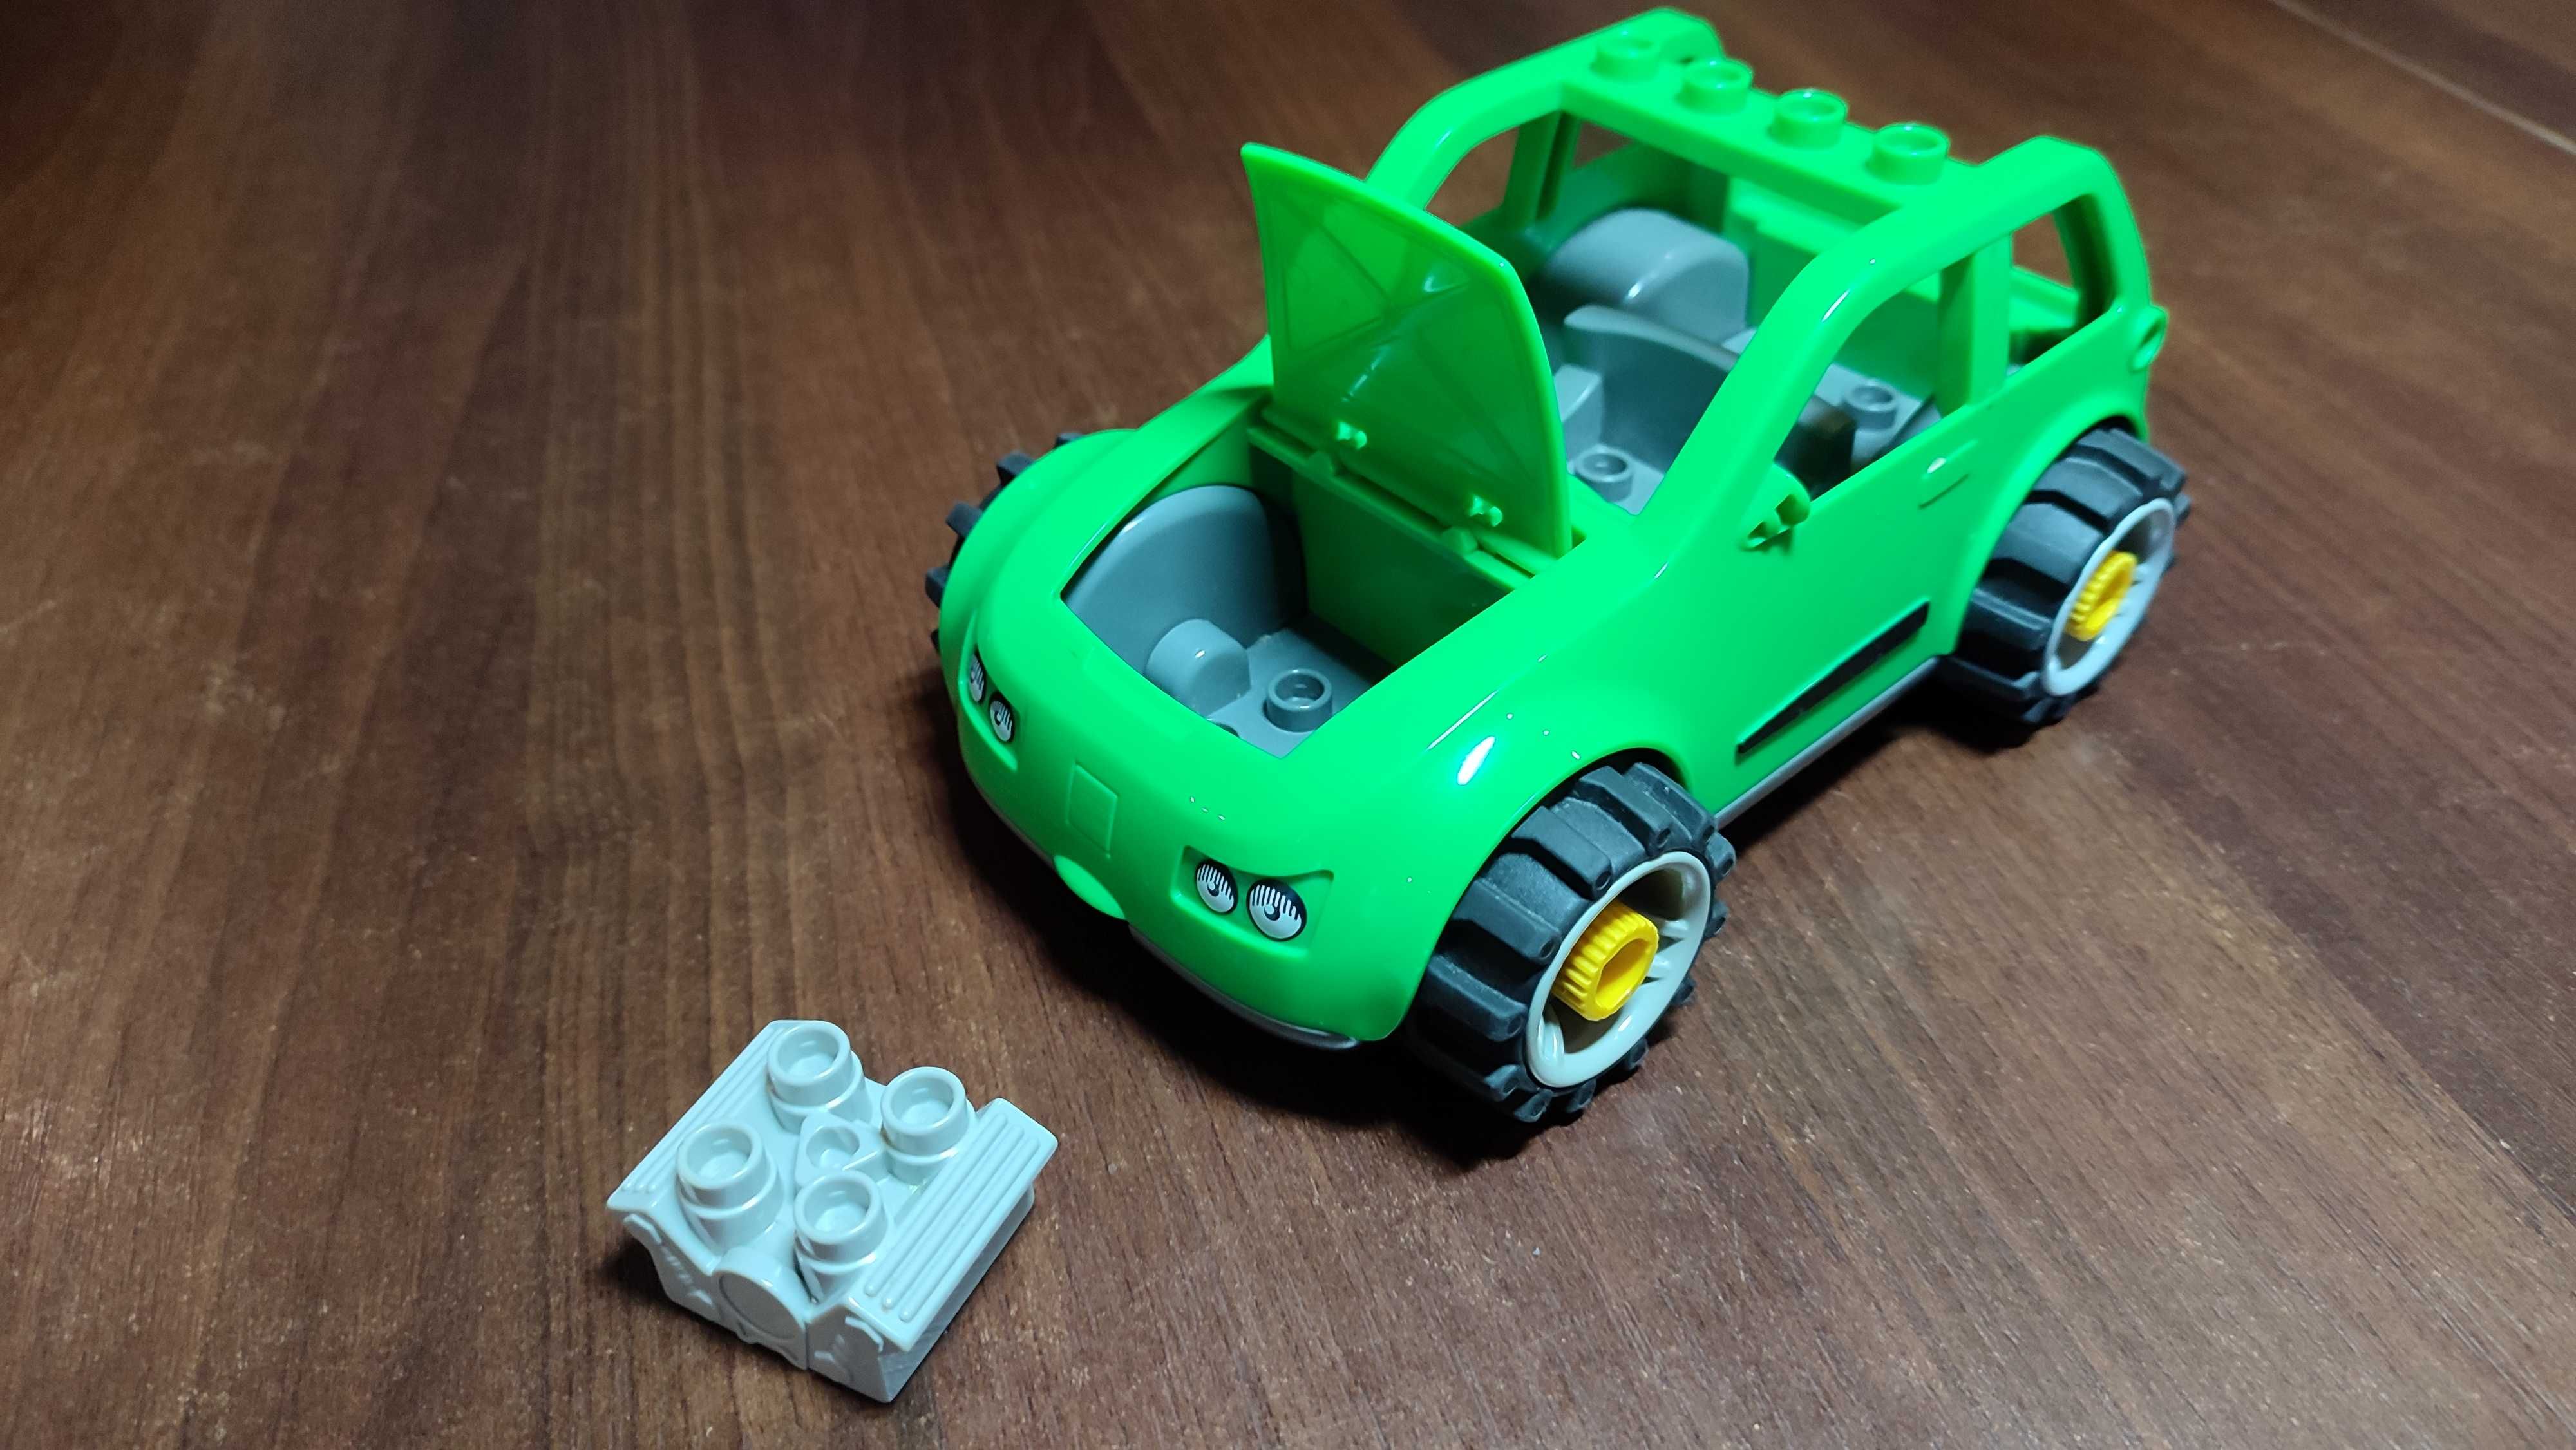 Zielony samochód LEGO duplo - z zestawu 5641